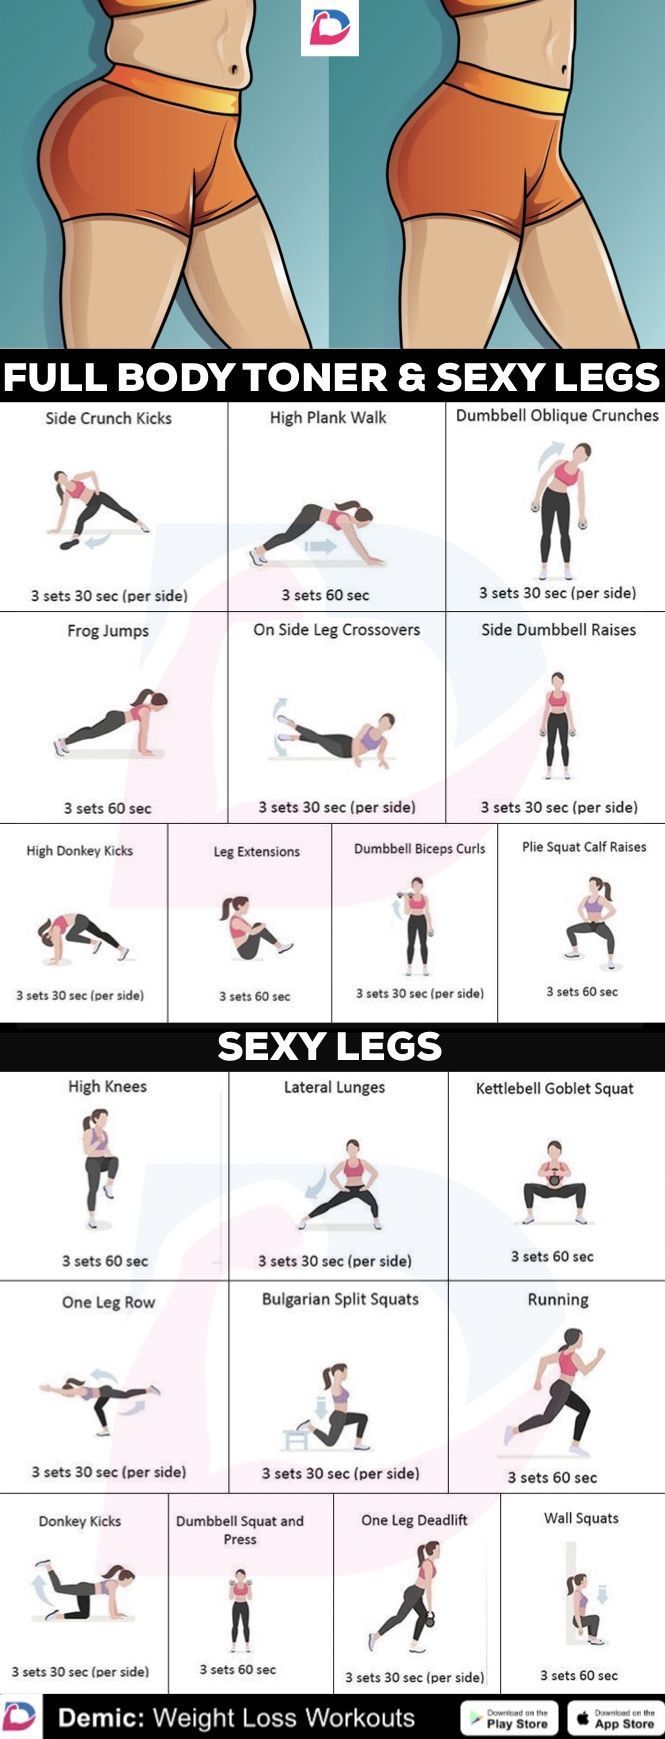 17 fitness Training wallpaper ideas